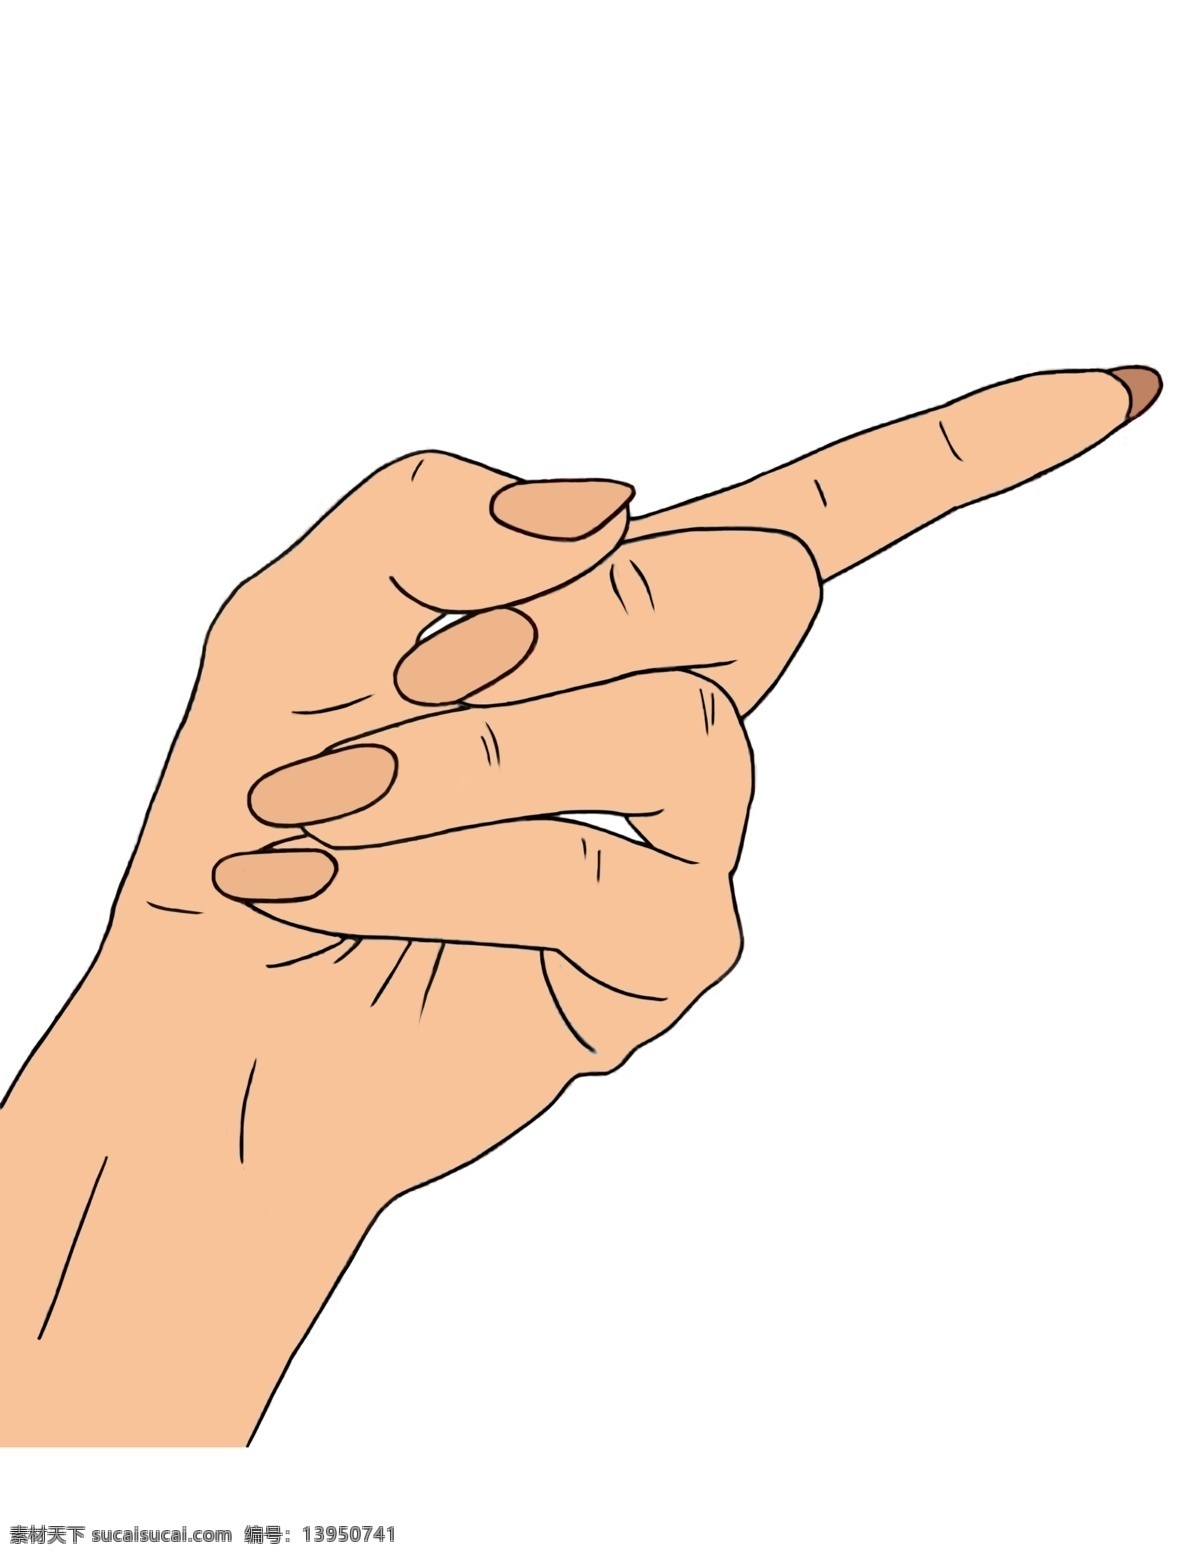 食指 指向 卡通 插画 食指指向 卡通手势插画 手势 创意手势插画 写实手势 手指动作插画 指向手势